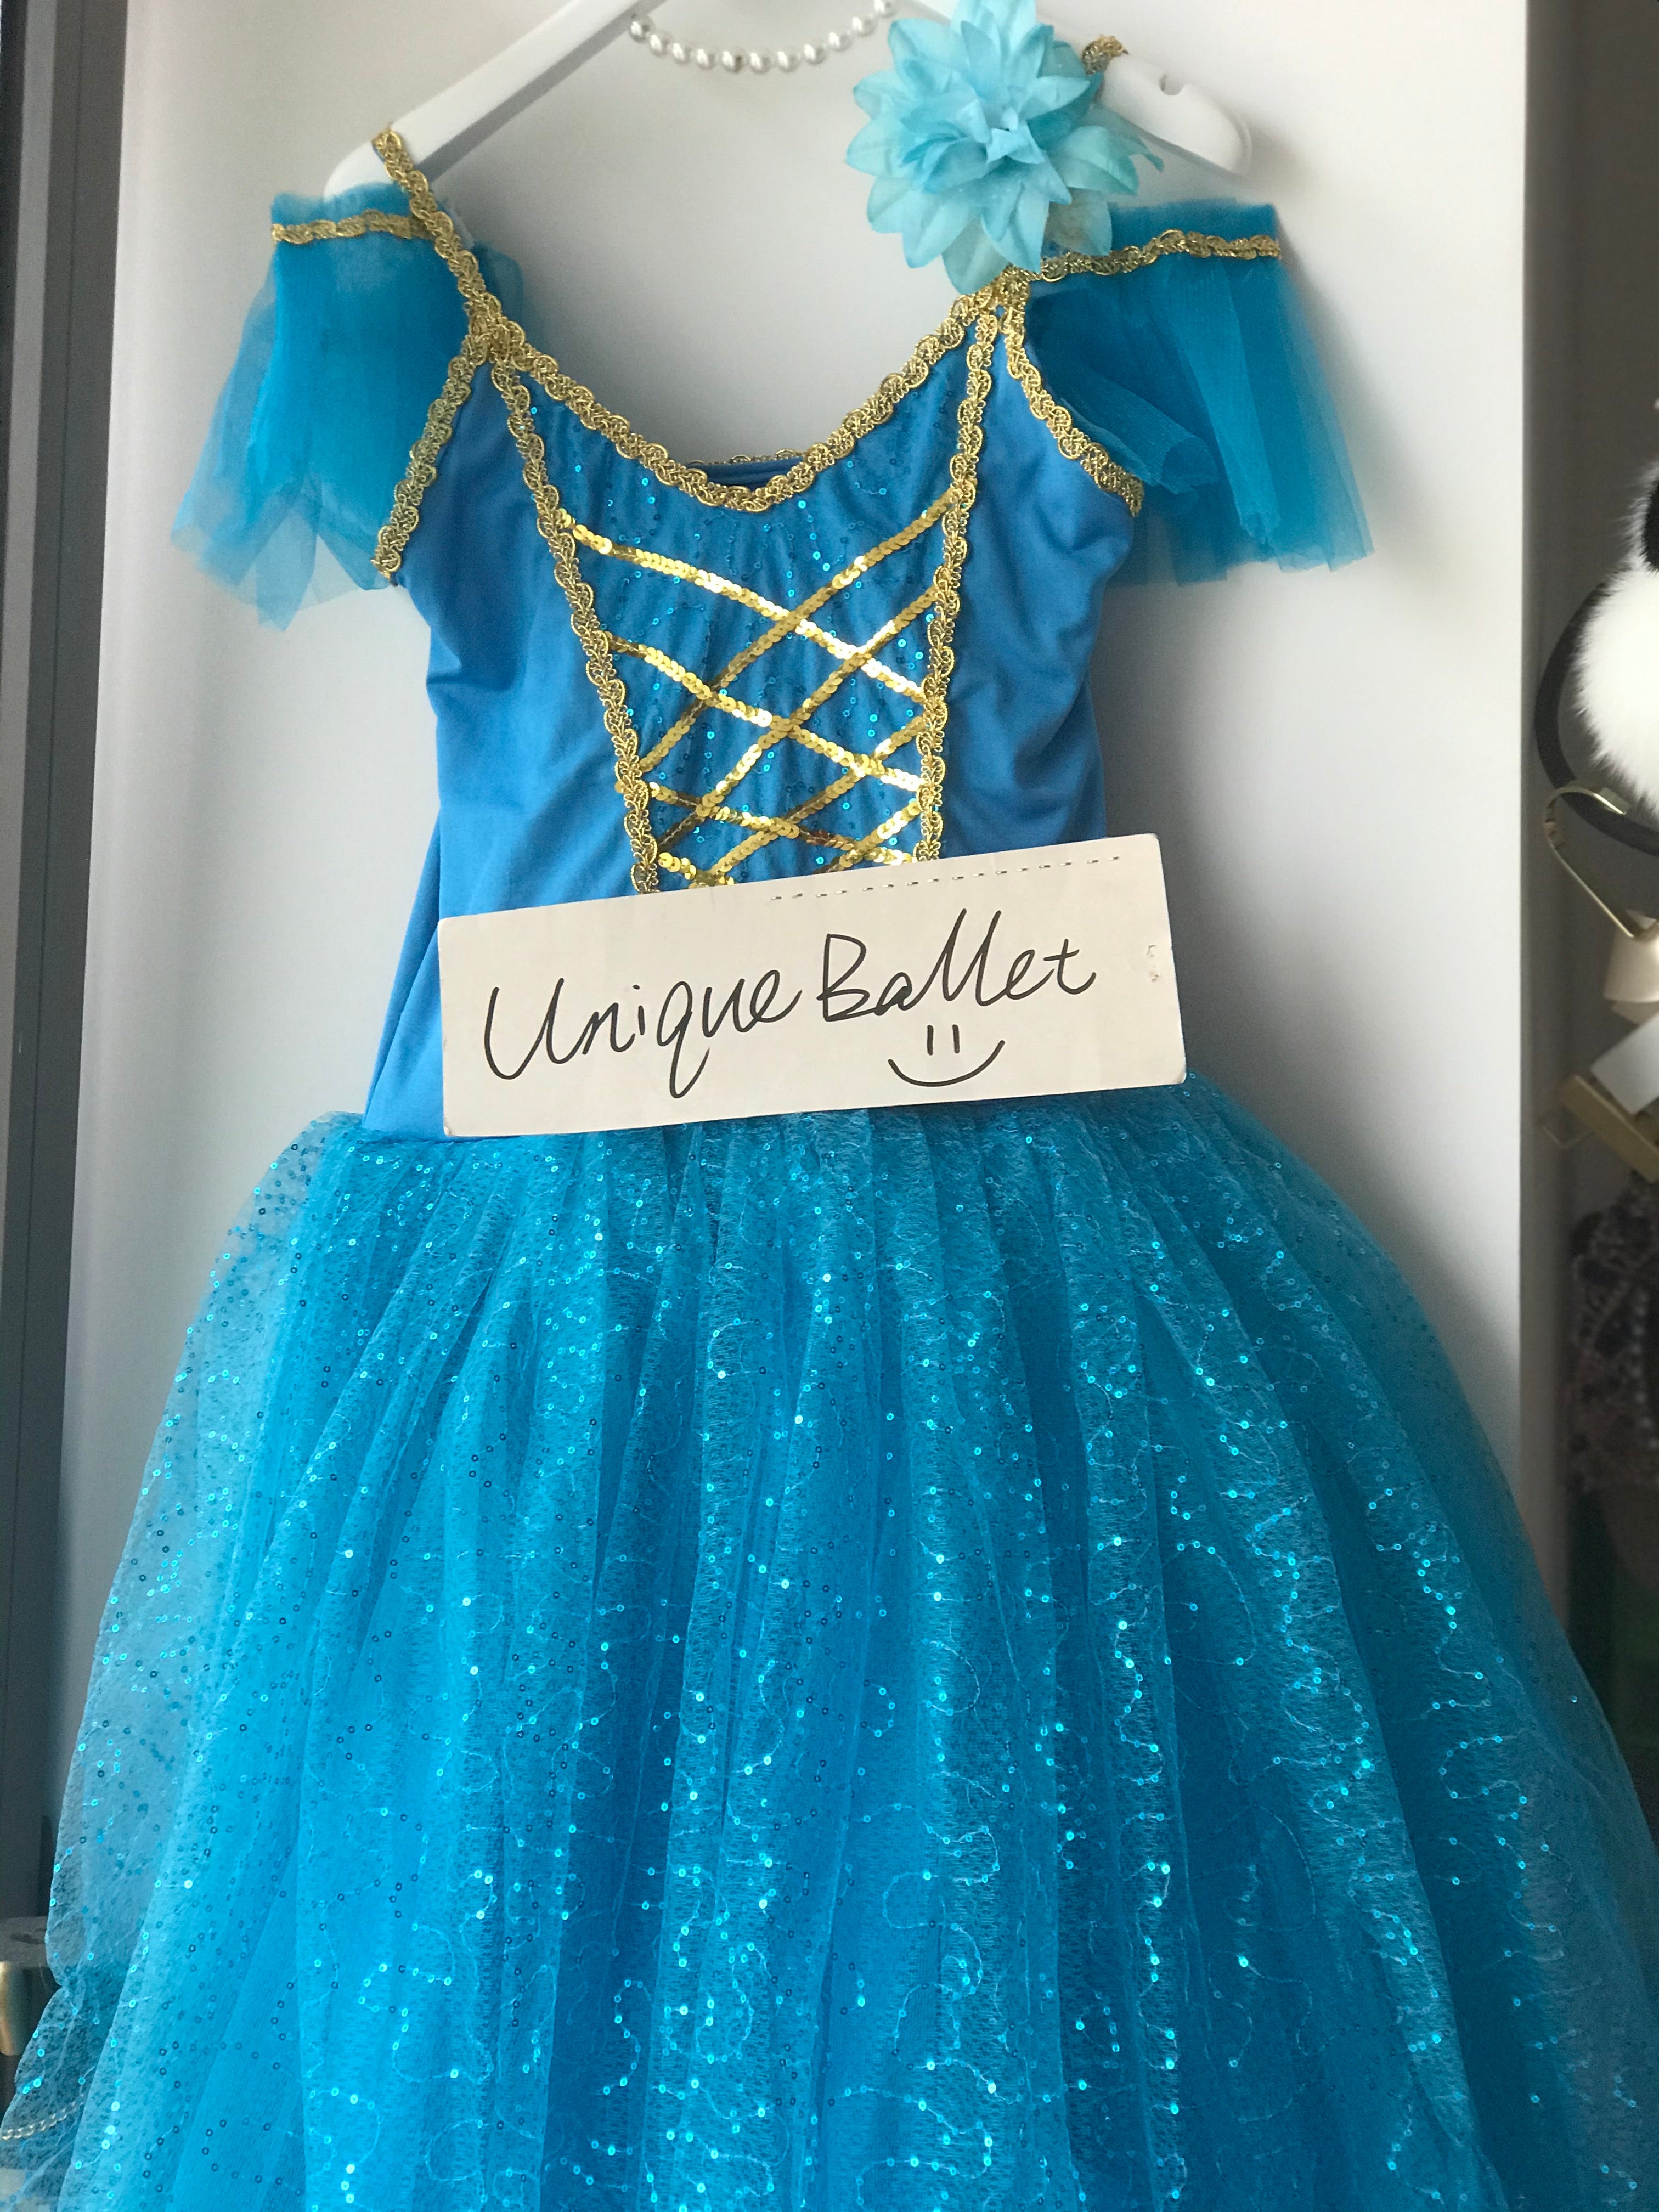 Blue Le Cosaire Corps Ballet DanceRomantic Ballet TuTu Dress Costume